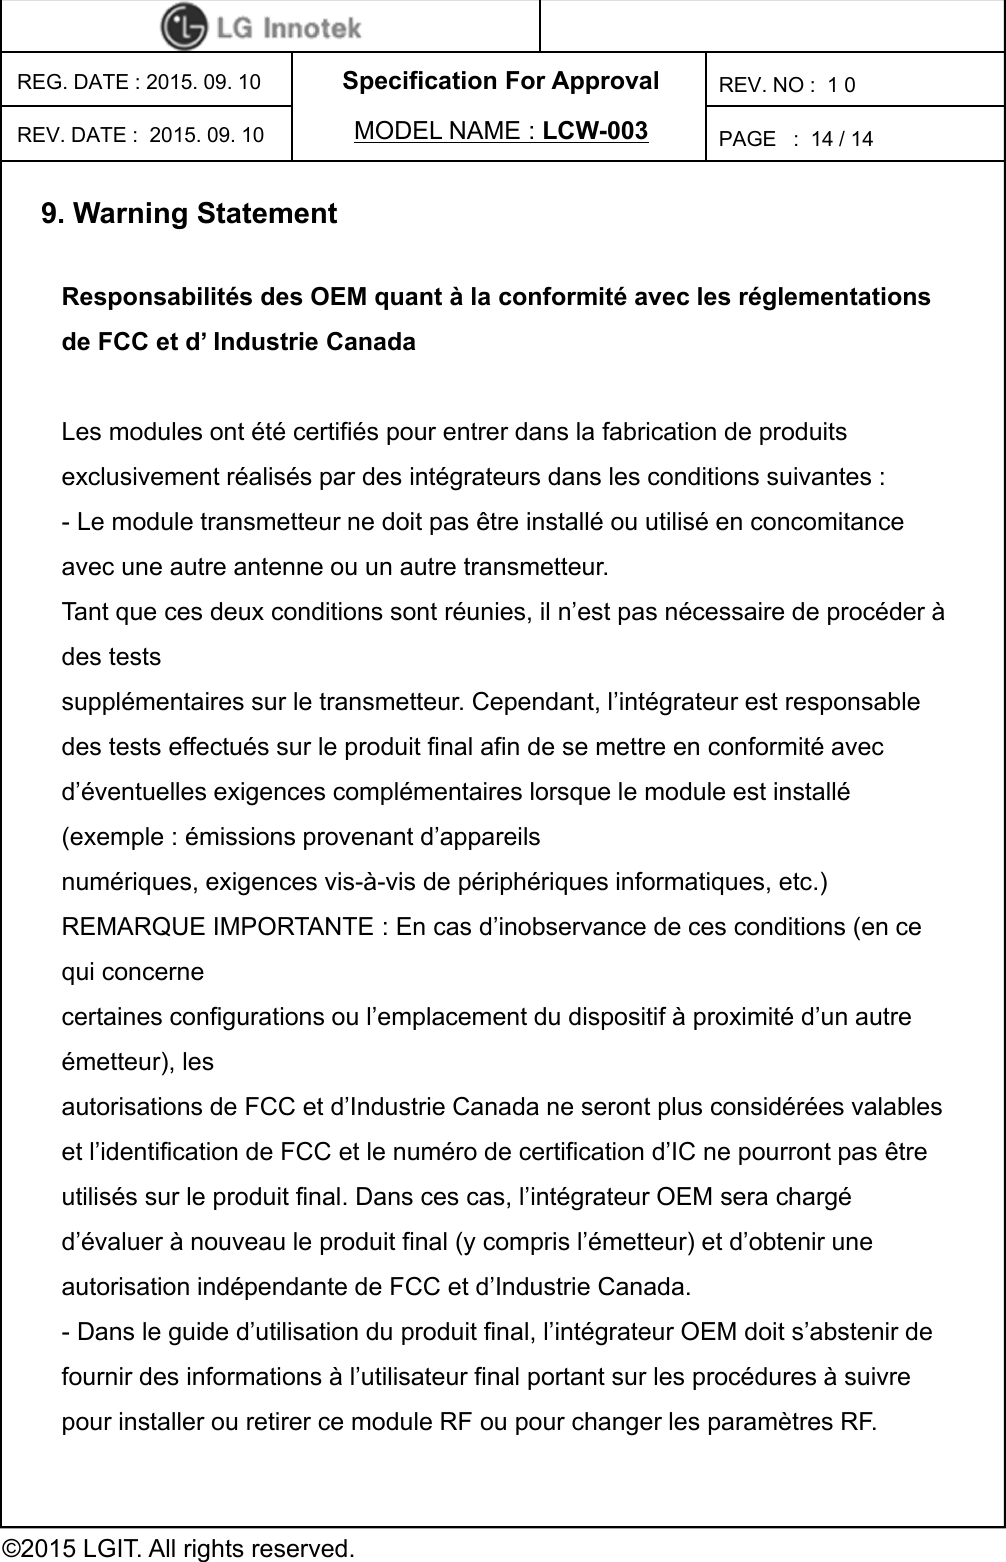 Specification For ApprovalPAGE   :REG. DATE : 2015. 09. 10MODEL NAME : LCW-003REV. NO :  1 0©2015 LGIT. All rights reserved.14 / 14REV. DATE :  2015. 09. 109. Warning StatementResponsabilités des OEM quant à la conformité avec les réglementations de FCC et d’ Industrie Canada Les modules ont été certifiés pour entrer dans la fabrication de produits exclusivement réalisés par des intégrateurs dans les conditions suivantes : - Le module transmetteur ne doit pas être installé ou utilisé en concomitance avec une autre antenne ou un autre transmetteur. Tant que ces deux conditions sont réunies, il n’est pas nécessaire de procéder à des tests supplémentaires sur le transmetteur. Cependant, l’intégrateur est responsable des tests effectués sur le produit final afin de se mettre en conformité avec d’éventuelles exigences complémentaires lorsque le module est installé (exemple : émissions provenant d’appareils numériques, exigences vis-à-vis de périphériques informatiques, etc.) REMARQUE IMPORTANTE : En cas d’inobservance de ces conditions (en ce qui concerne certaines configurations ou l’emplacement du dispositif à proximité d’un autre émetteur), les autorisations de FCC et d’Industrie Canada ne seront plus considérées valables et l’identification de FCC et le numéro de certification d’IC ne pourront pas être utilisés sur le produit final. Dans ces cas, l’intégrateur OEM sera chargé d’évaluer à nouveau le produit final (y compris l’émetteur) et d’obtenir une autorisation indépendante de FCC et d’Industrie Canada. - Dans le guide d’utilisation du produit final, l’intégrateur OEM doit s’abstenir de fournir des informations à l’utilisateur final portant sur les procédures à suivre pour installer ou retirer ce module RF ou pour changer les paramètres RF. 